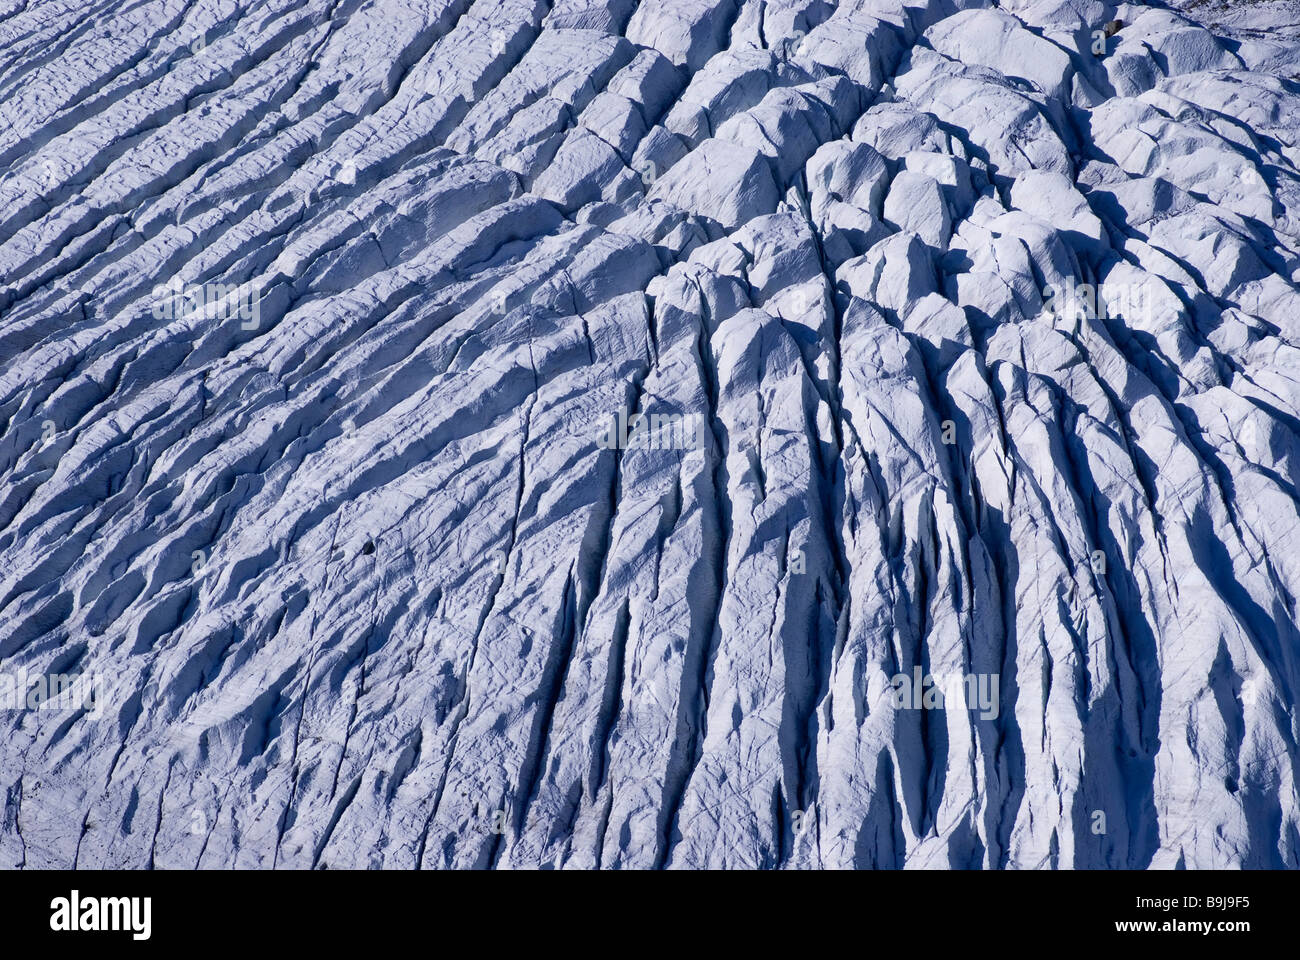 Glacier crevassé, Morteratschgletscher, Buendner Alpes, canton de Grisons, Suisse, Europe Banque D'Images